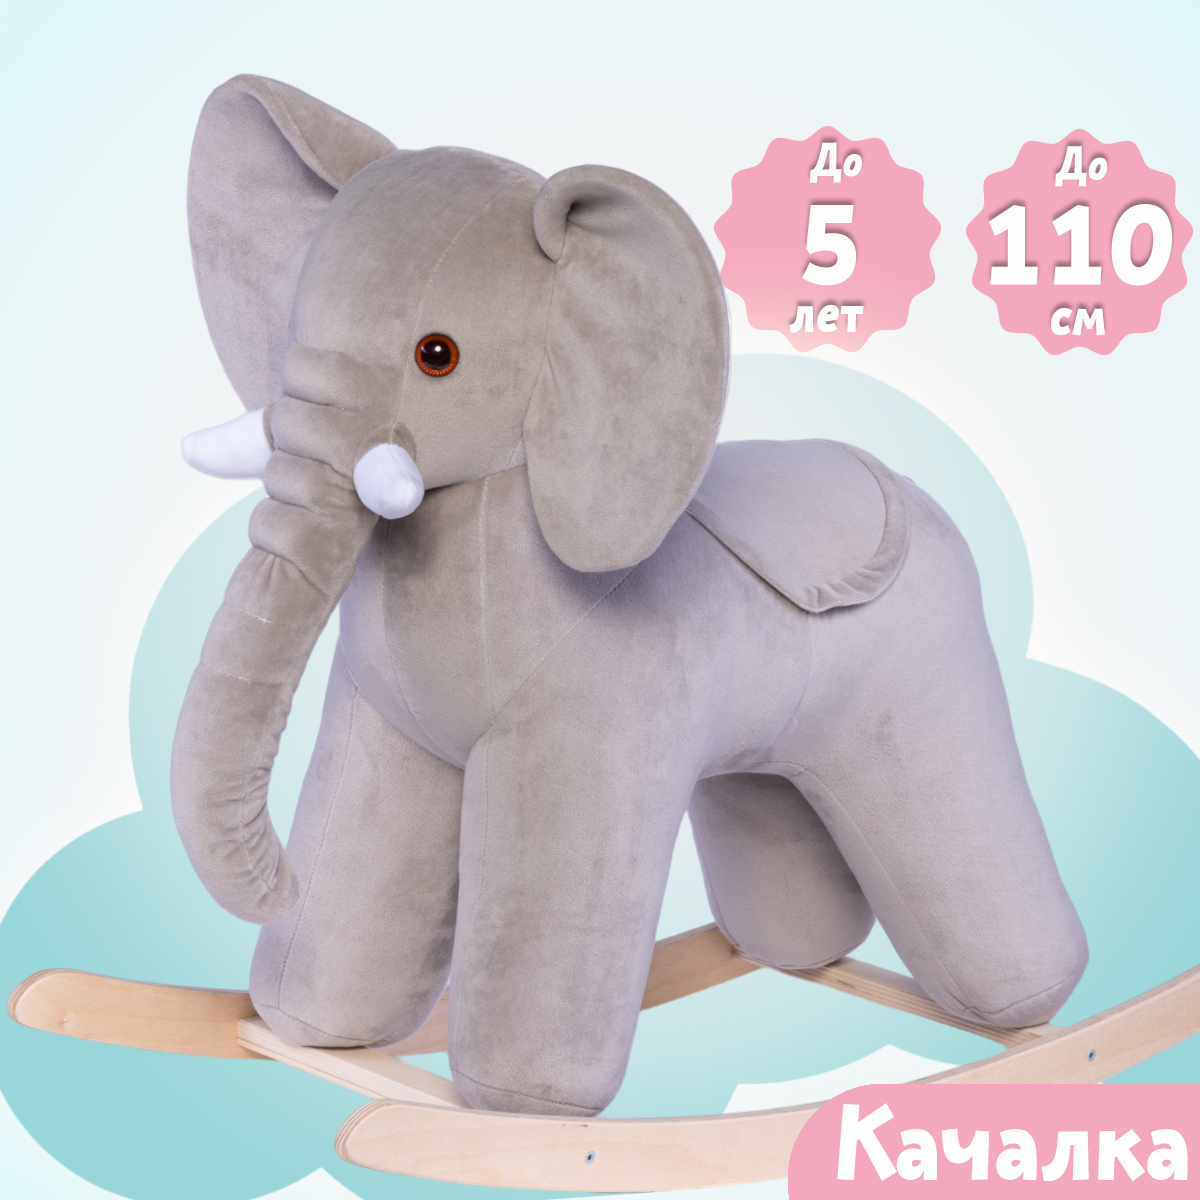 Качалка Нижегородская игрушка Слон серый - фото 4